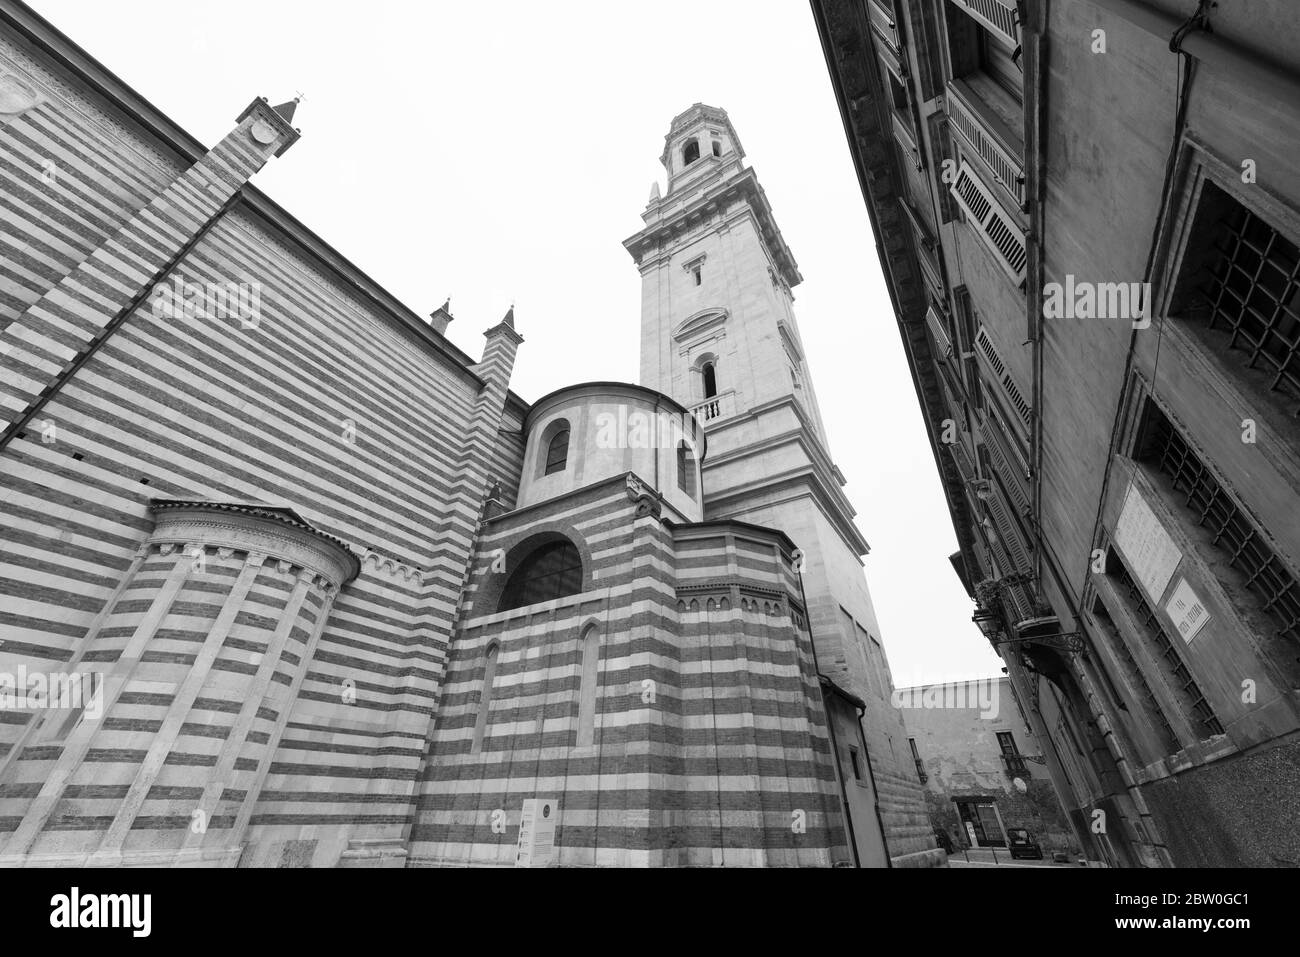 VERONA, ITALIA - 15, MARZO de 2018: Imagen en blanco y negro de la enorme catedral de Santa María Matricolare, una visita turística católica de Verona, Italia Foto de stock